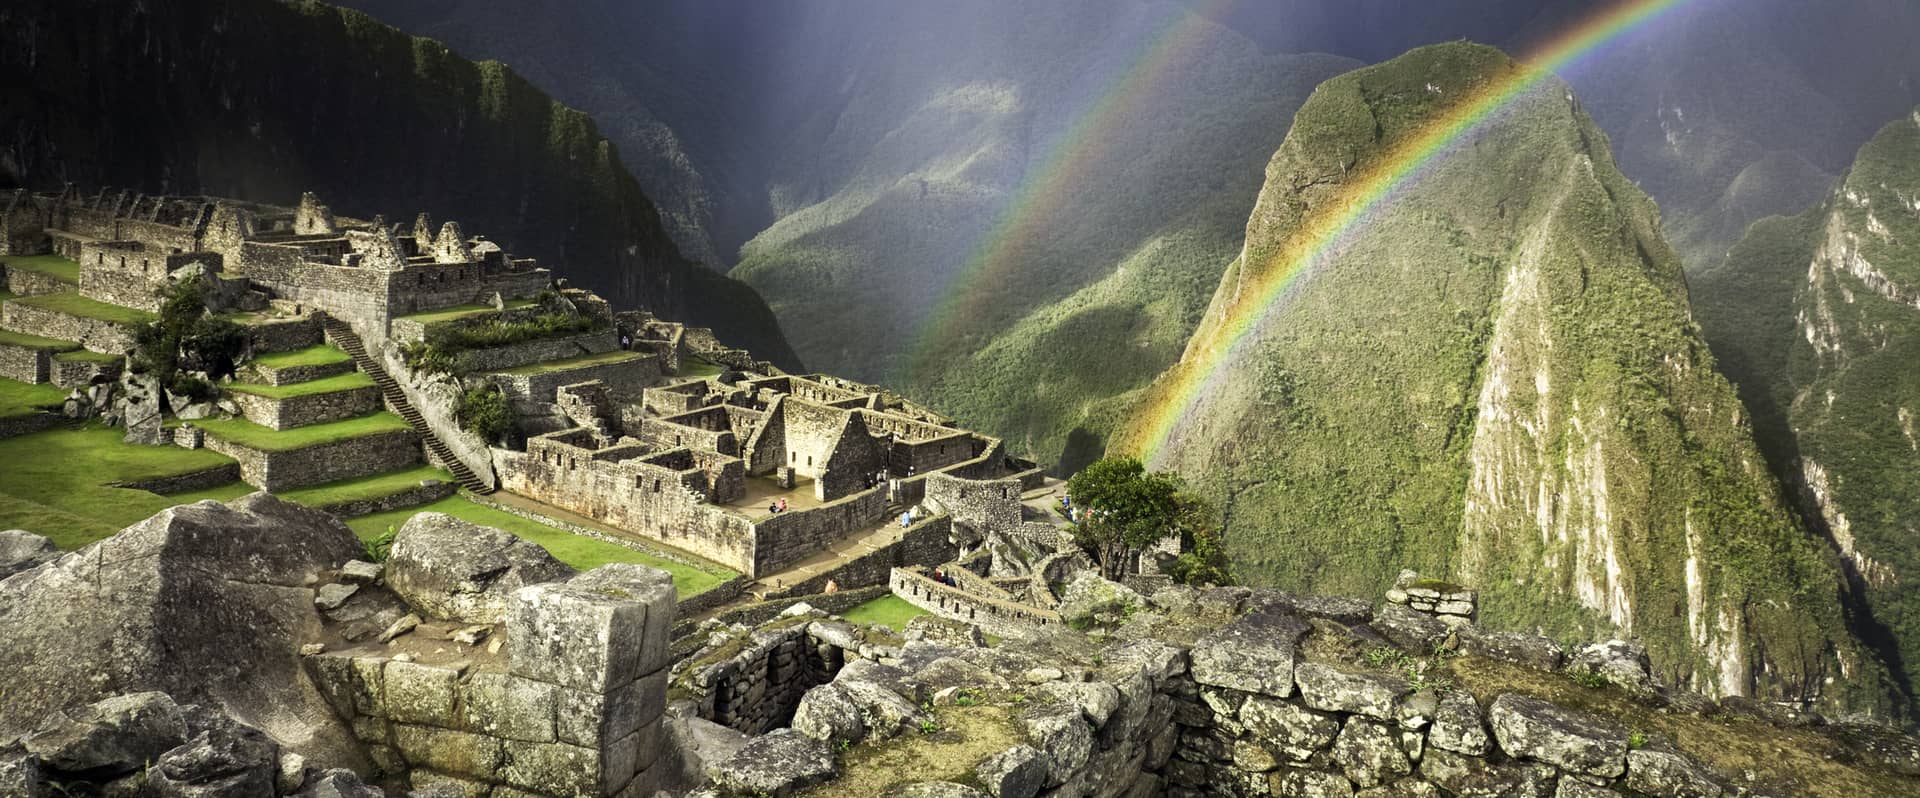 Rainbow at Machu Picchu - Tour to Machu Picchu